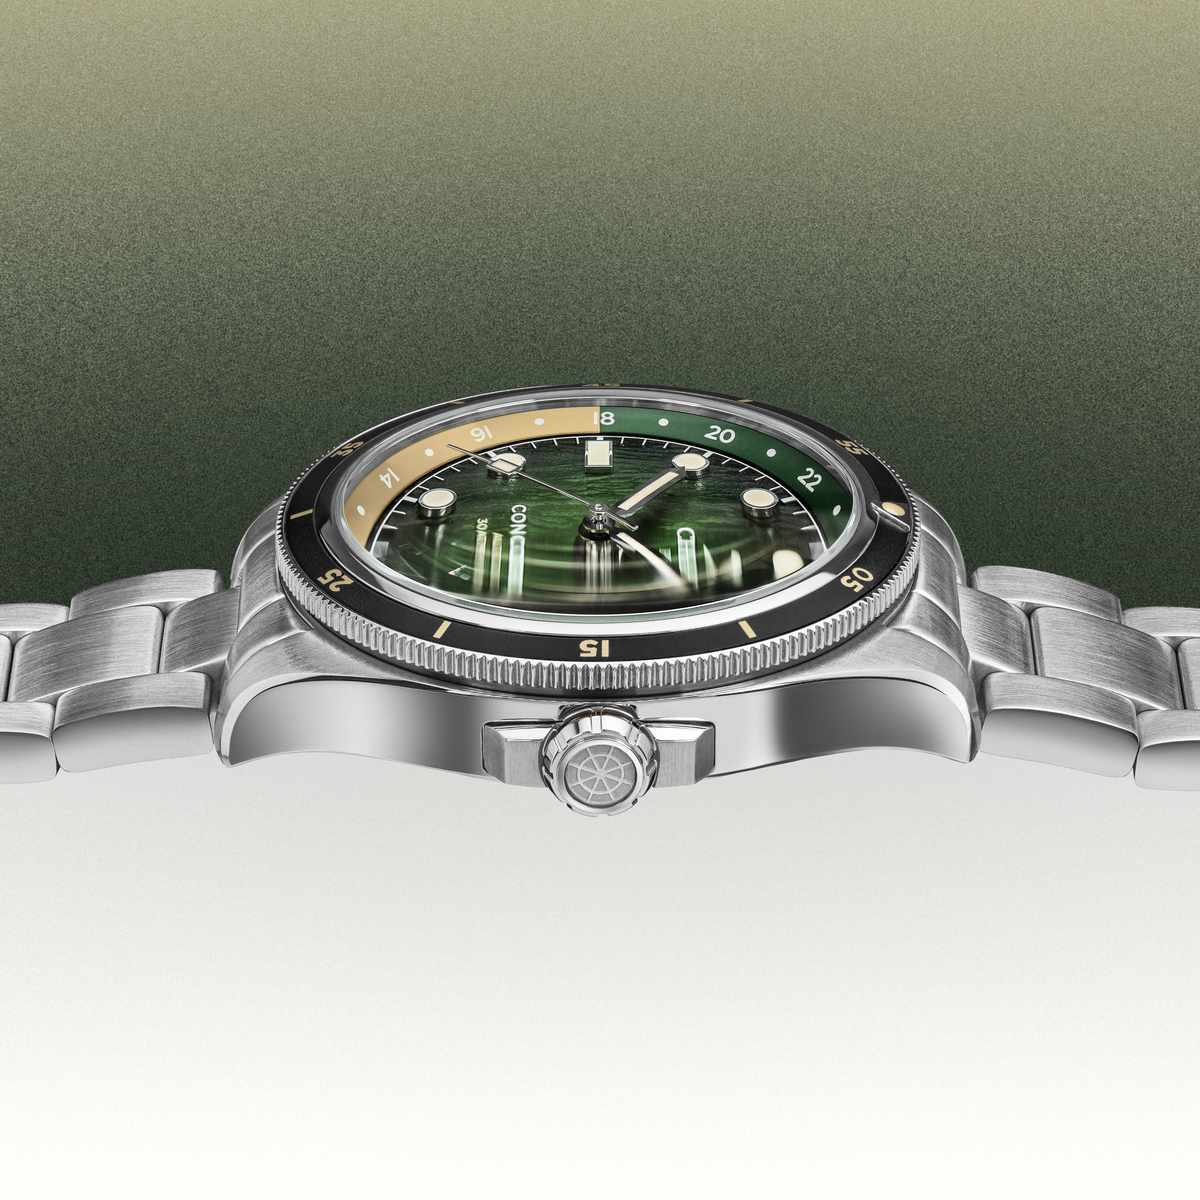 CONCORDIA - Automatic GMT - Latitude 0° - Steel bracelet